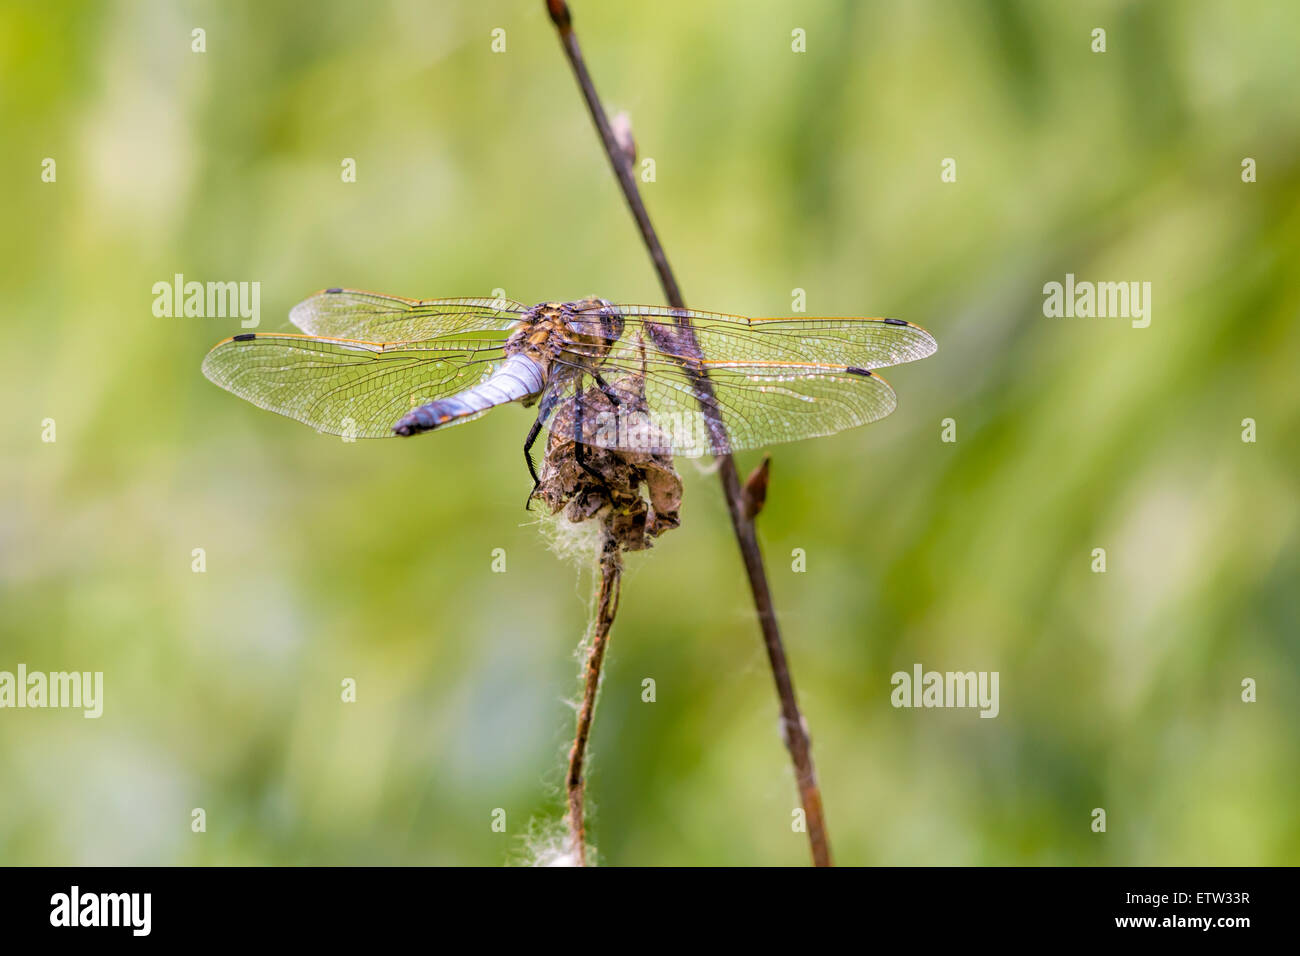 Una libellula è appoggiata su di un fiore secco che mostra i dettagli di ali trasparente brilla sotto il sole di primavera Foto Stock